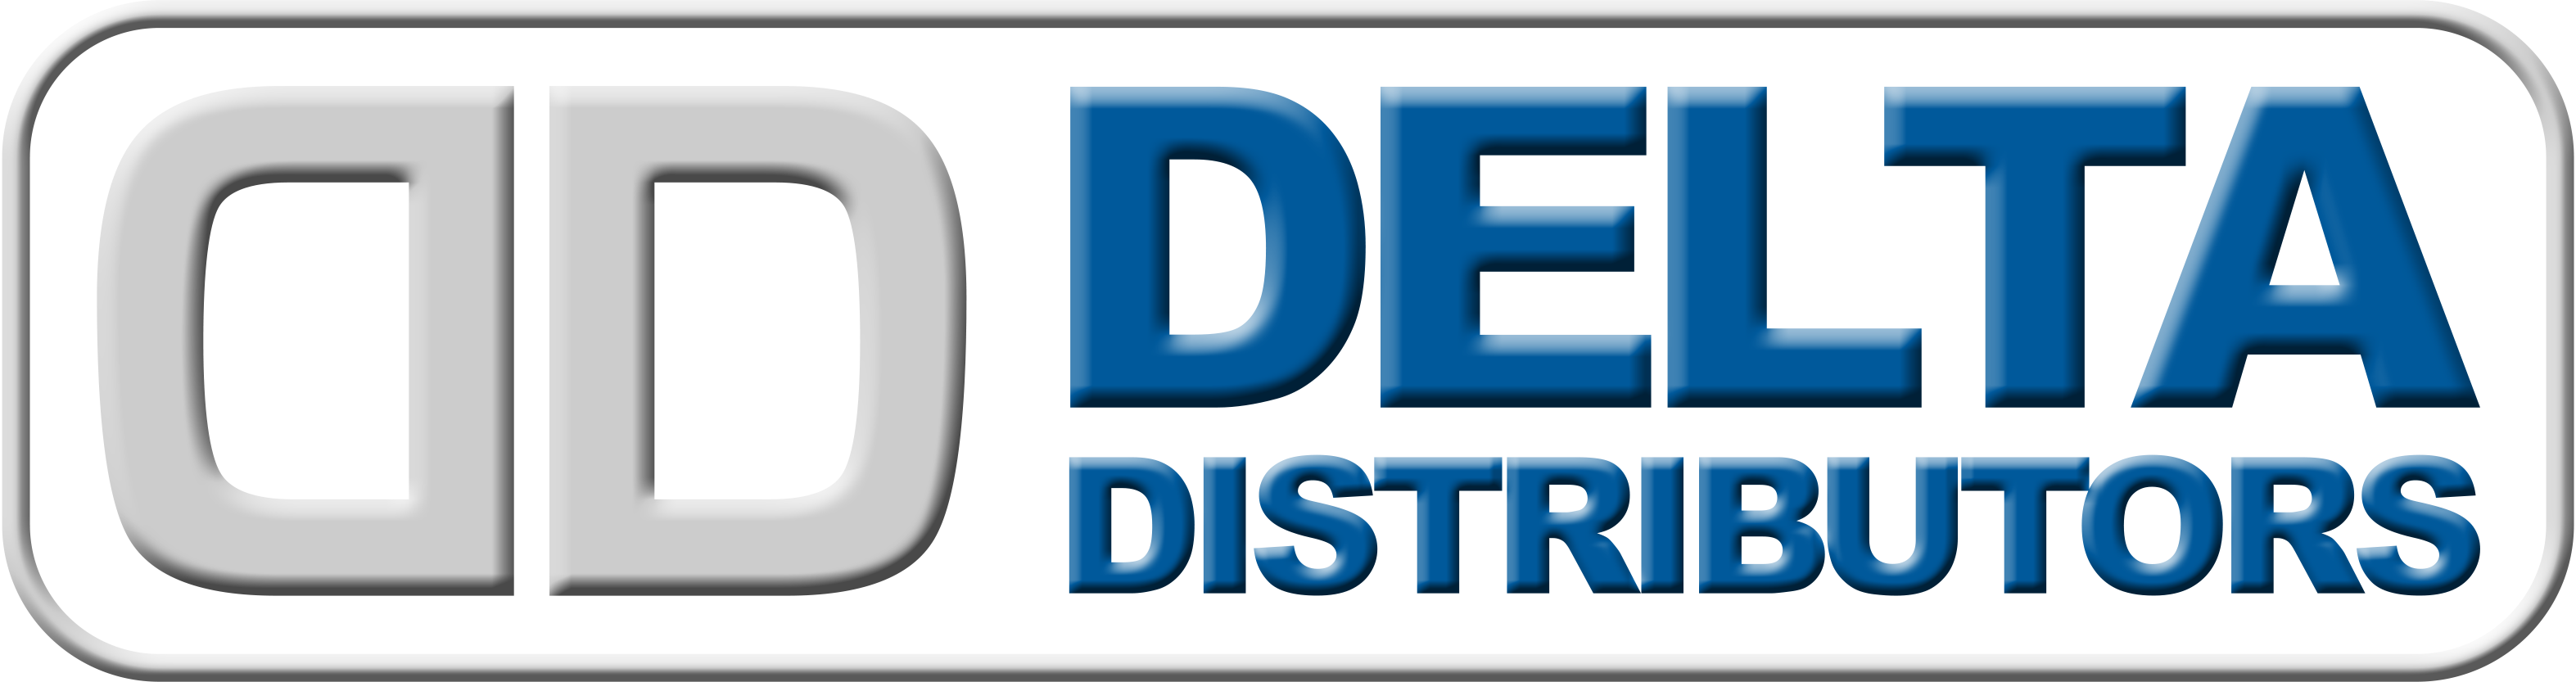 Delta Distributors AE Limited